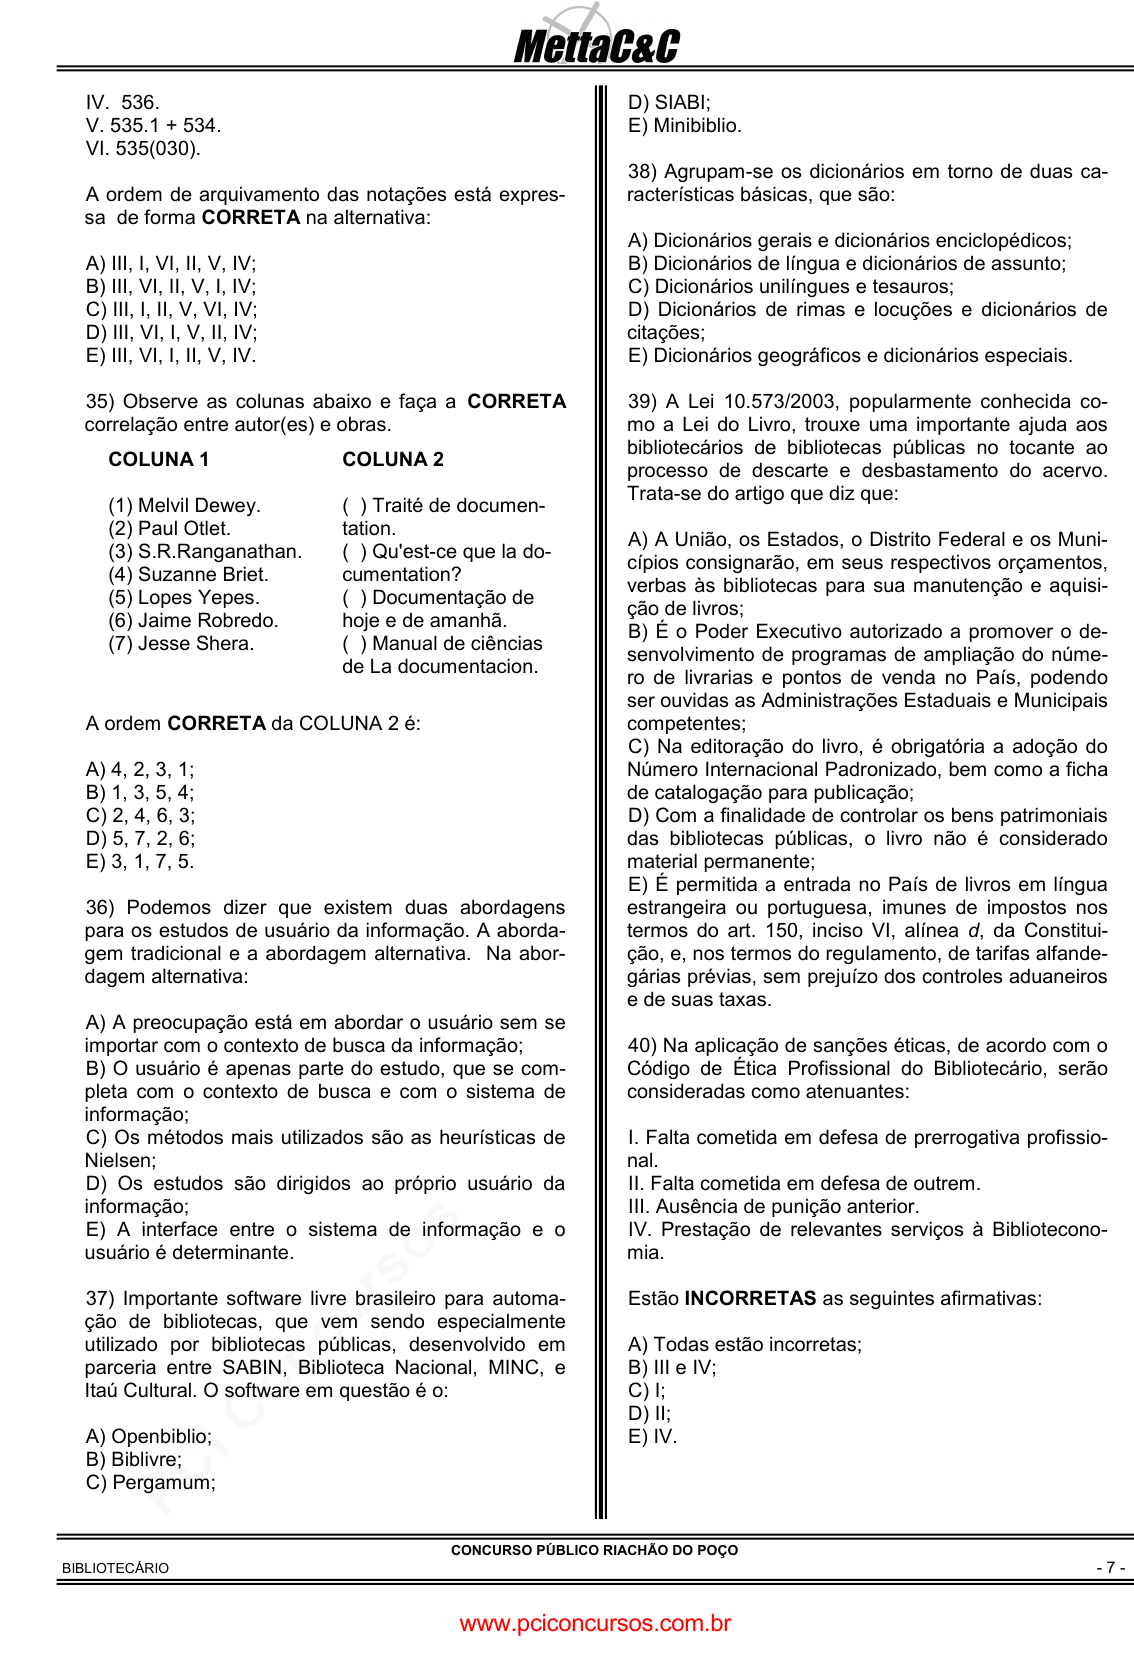 Prova Pref. Riachão do PoçoPB - METTA - 2011 - para Médico - PSF